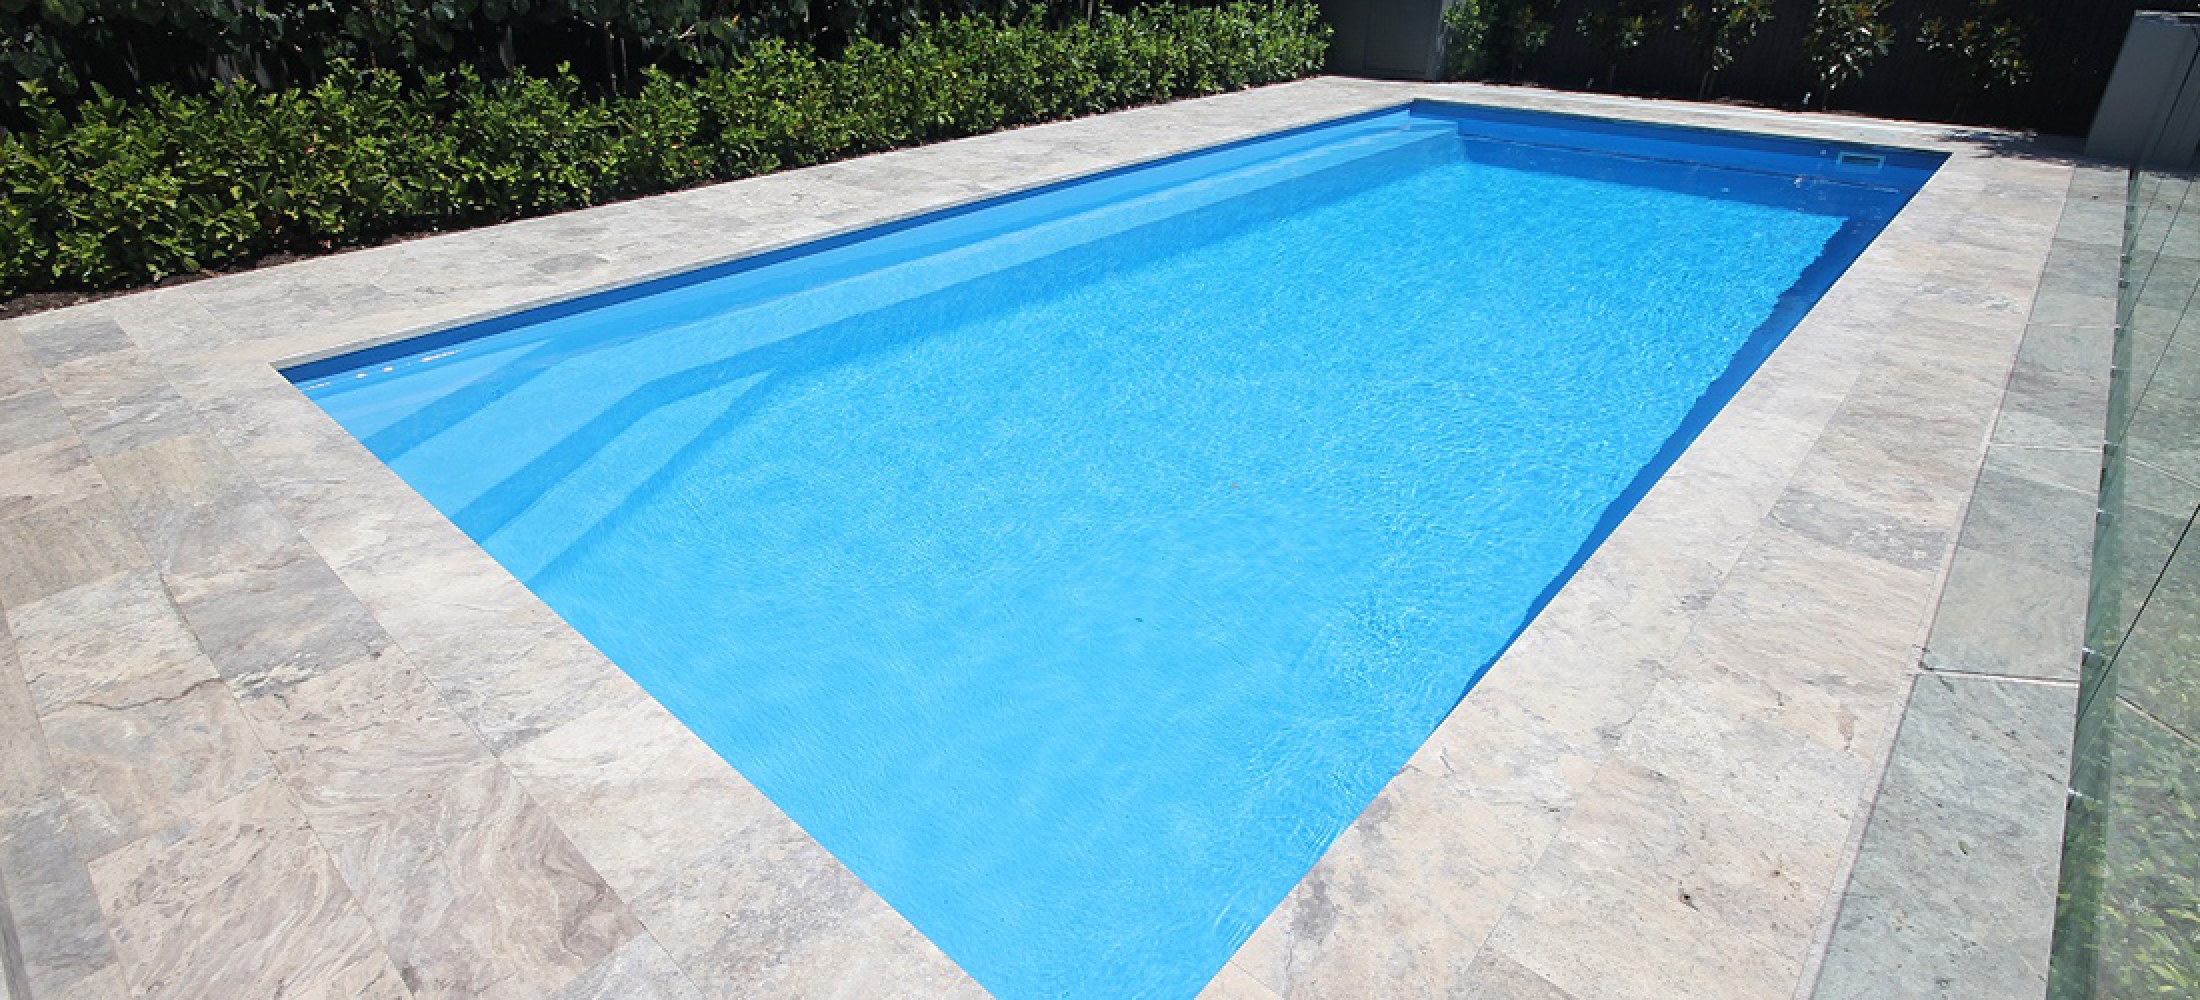 Siena Fibreglass Swimming Pool - 9.5m x 4.45m | Gary West Pools